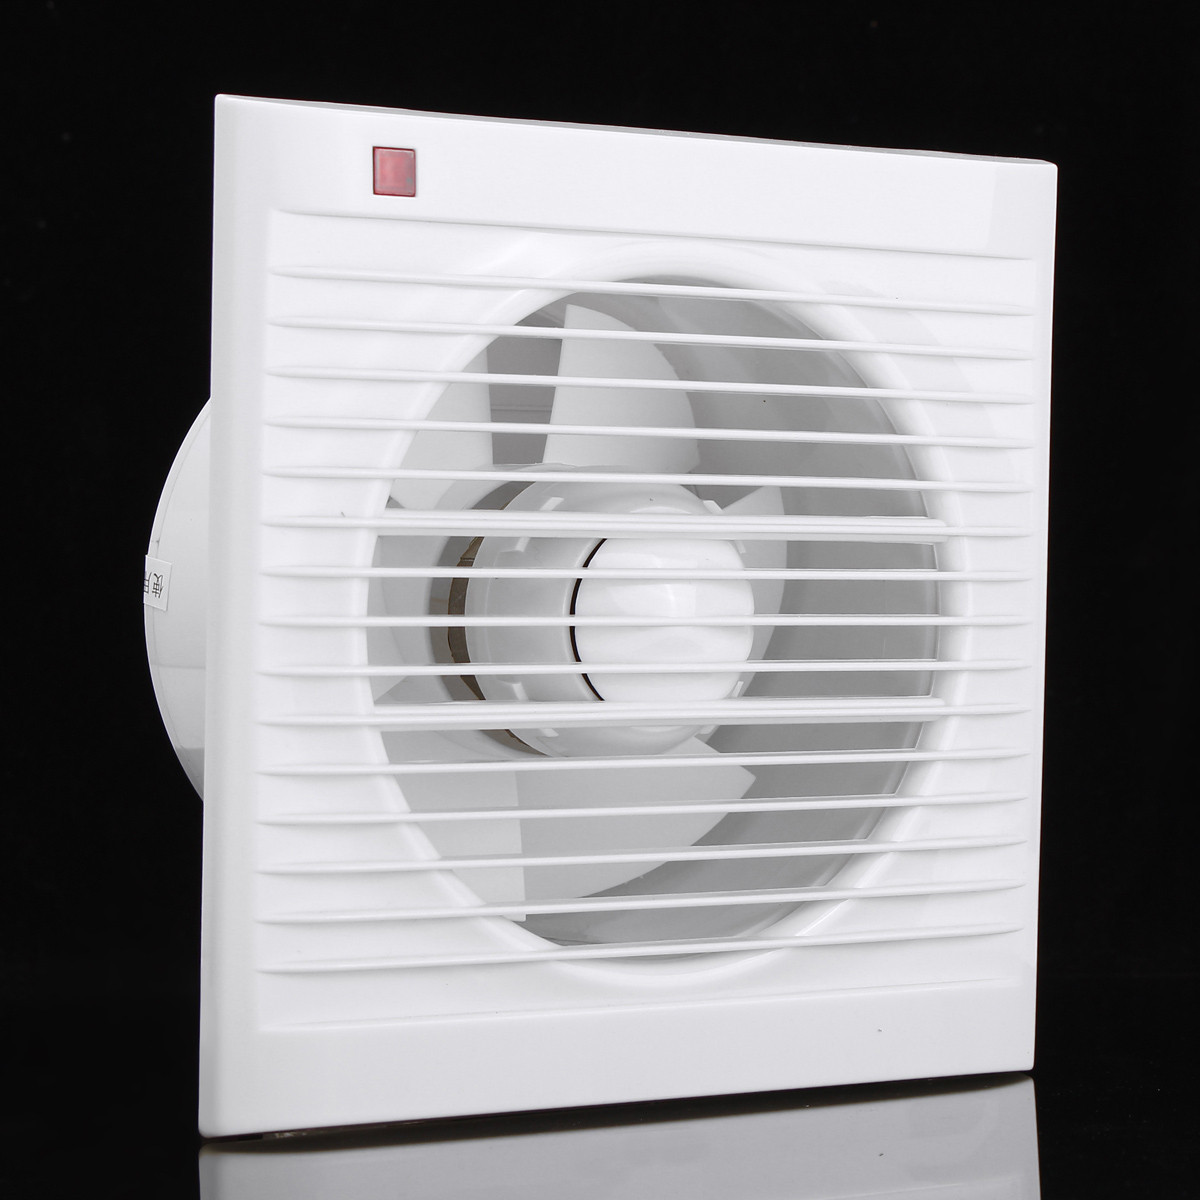 Вентилятор вытяжной для туалета купить. Вытяжной вентилятор “Dusel” DV-150. Fan Volcano Mini вентилятор вытяжной. Вентилятор вытяжной оконный с обратным клапаном. Вытяжка для ванной комнаты с вентилятором Эра.